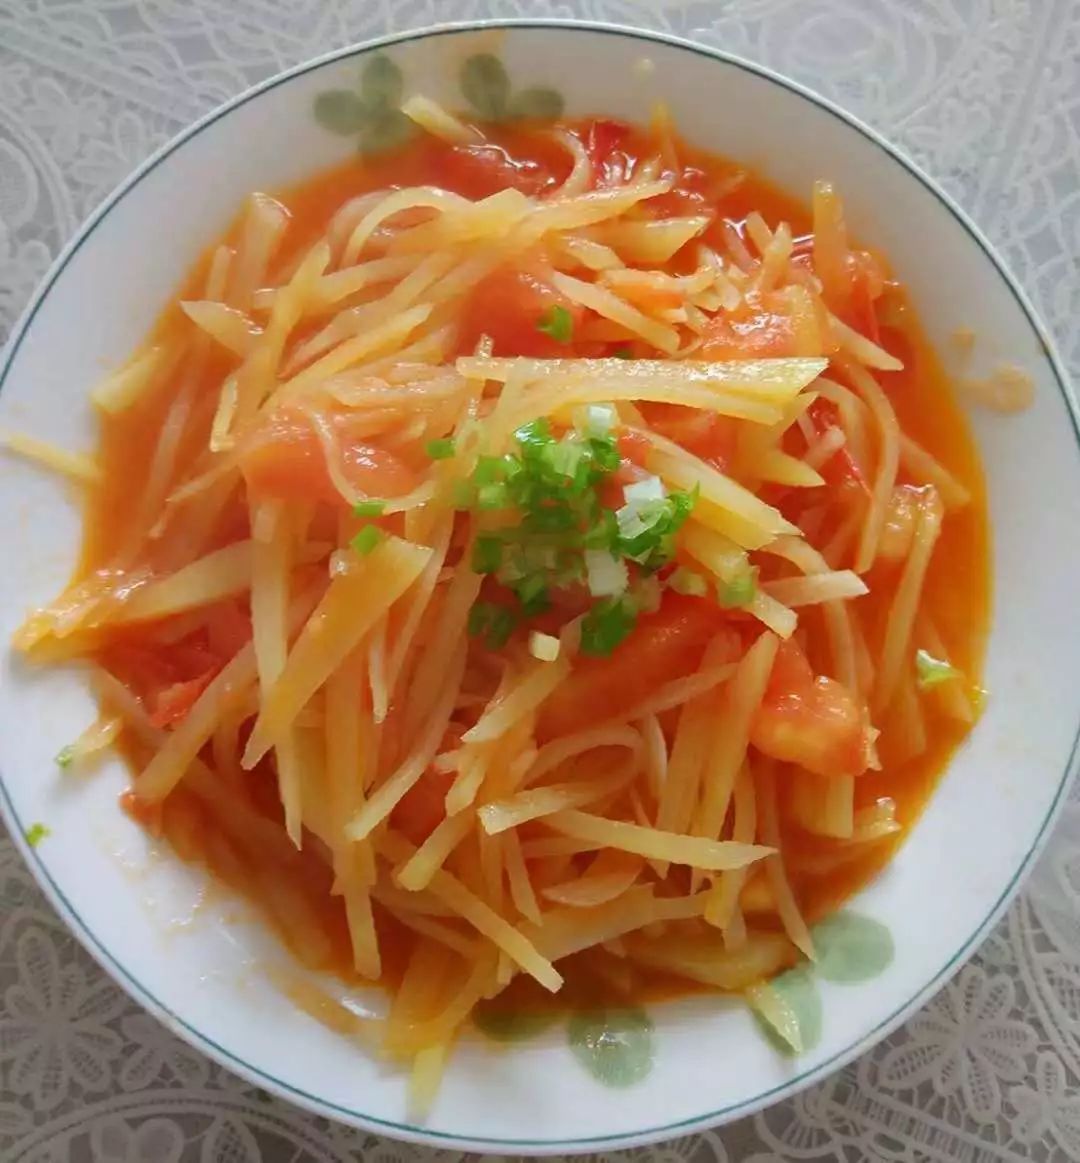 晚餐:西红柿土豆丝 白米粥 小手工馍